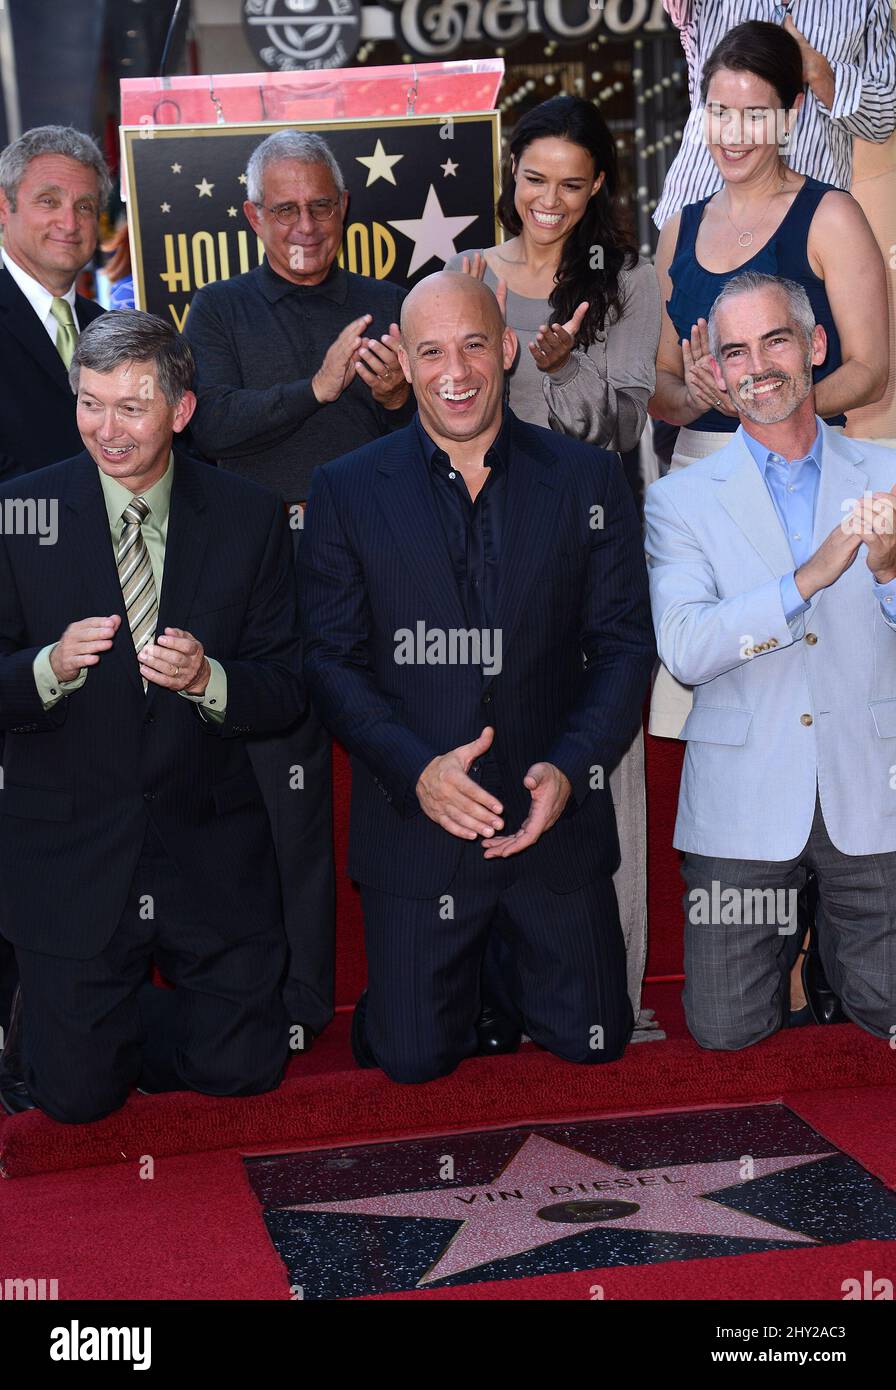 VIN Diesel asiste a su presentación de Hollywood Walk of Fame Star. Foto de stock